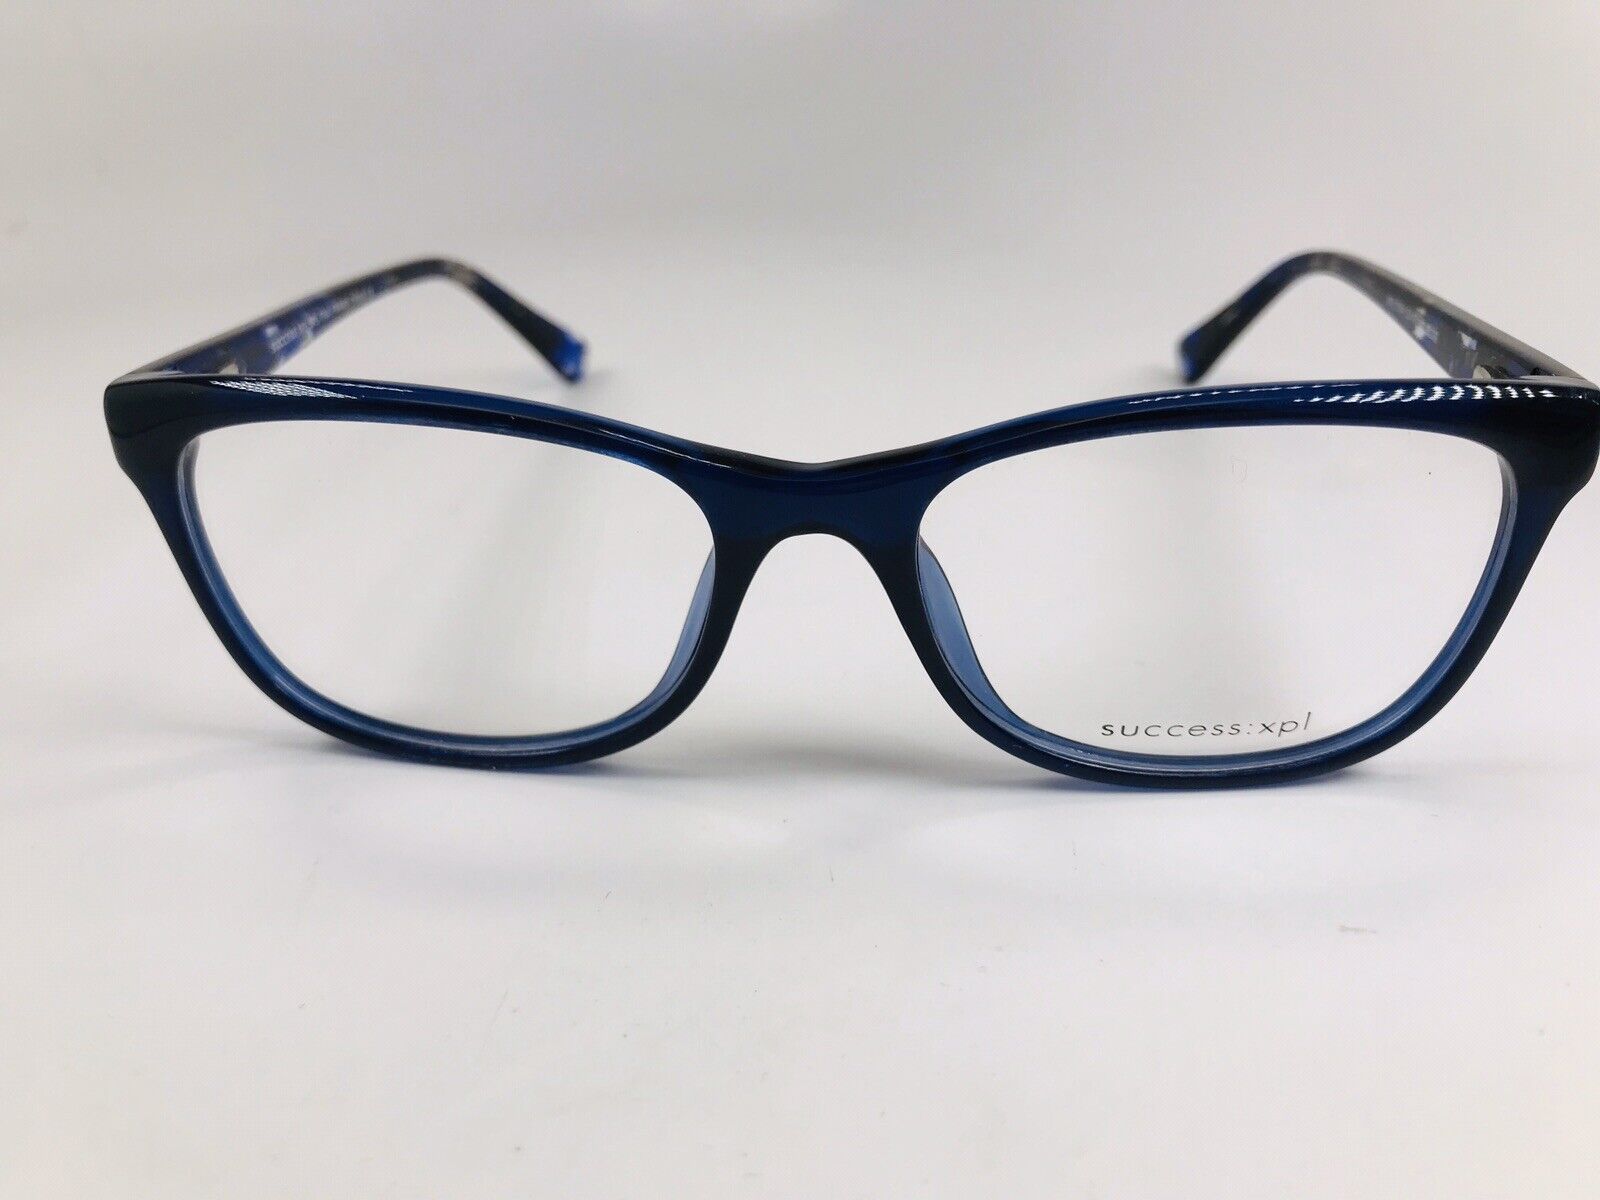 SUCCESS XPL Blue TINA Eyeglasses 52mm - True View Optics